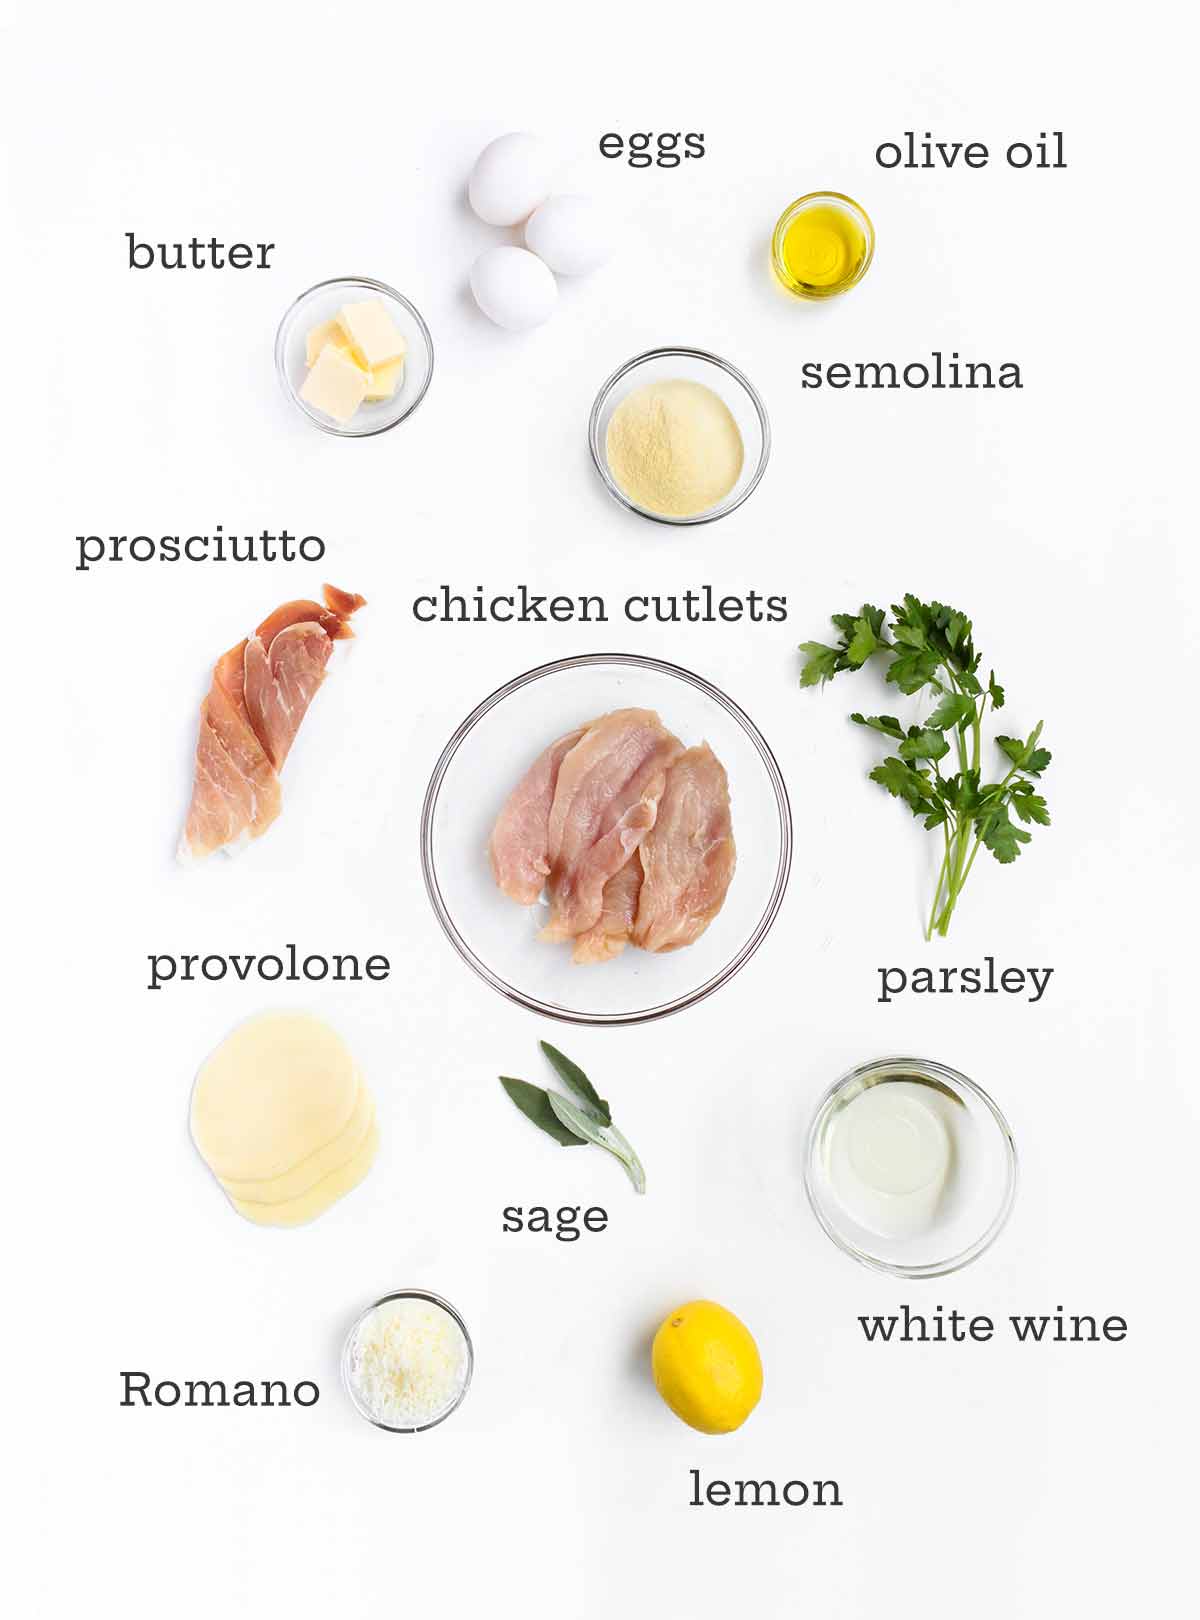 Ingredienser för kyckling saltimbocca--kyckling, ägg, ost, örter, olivolja, vin, smör och prosciutto.